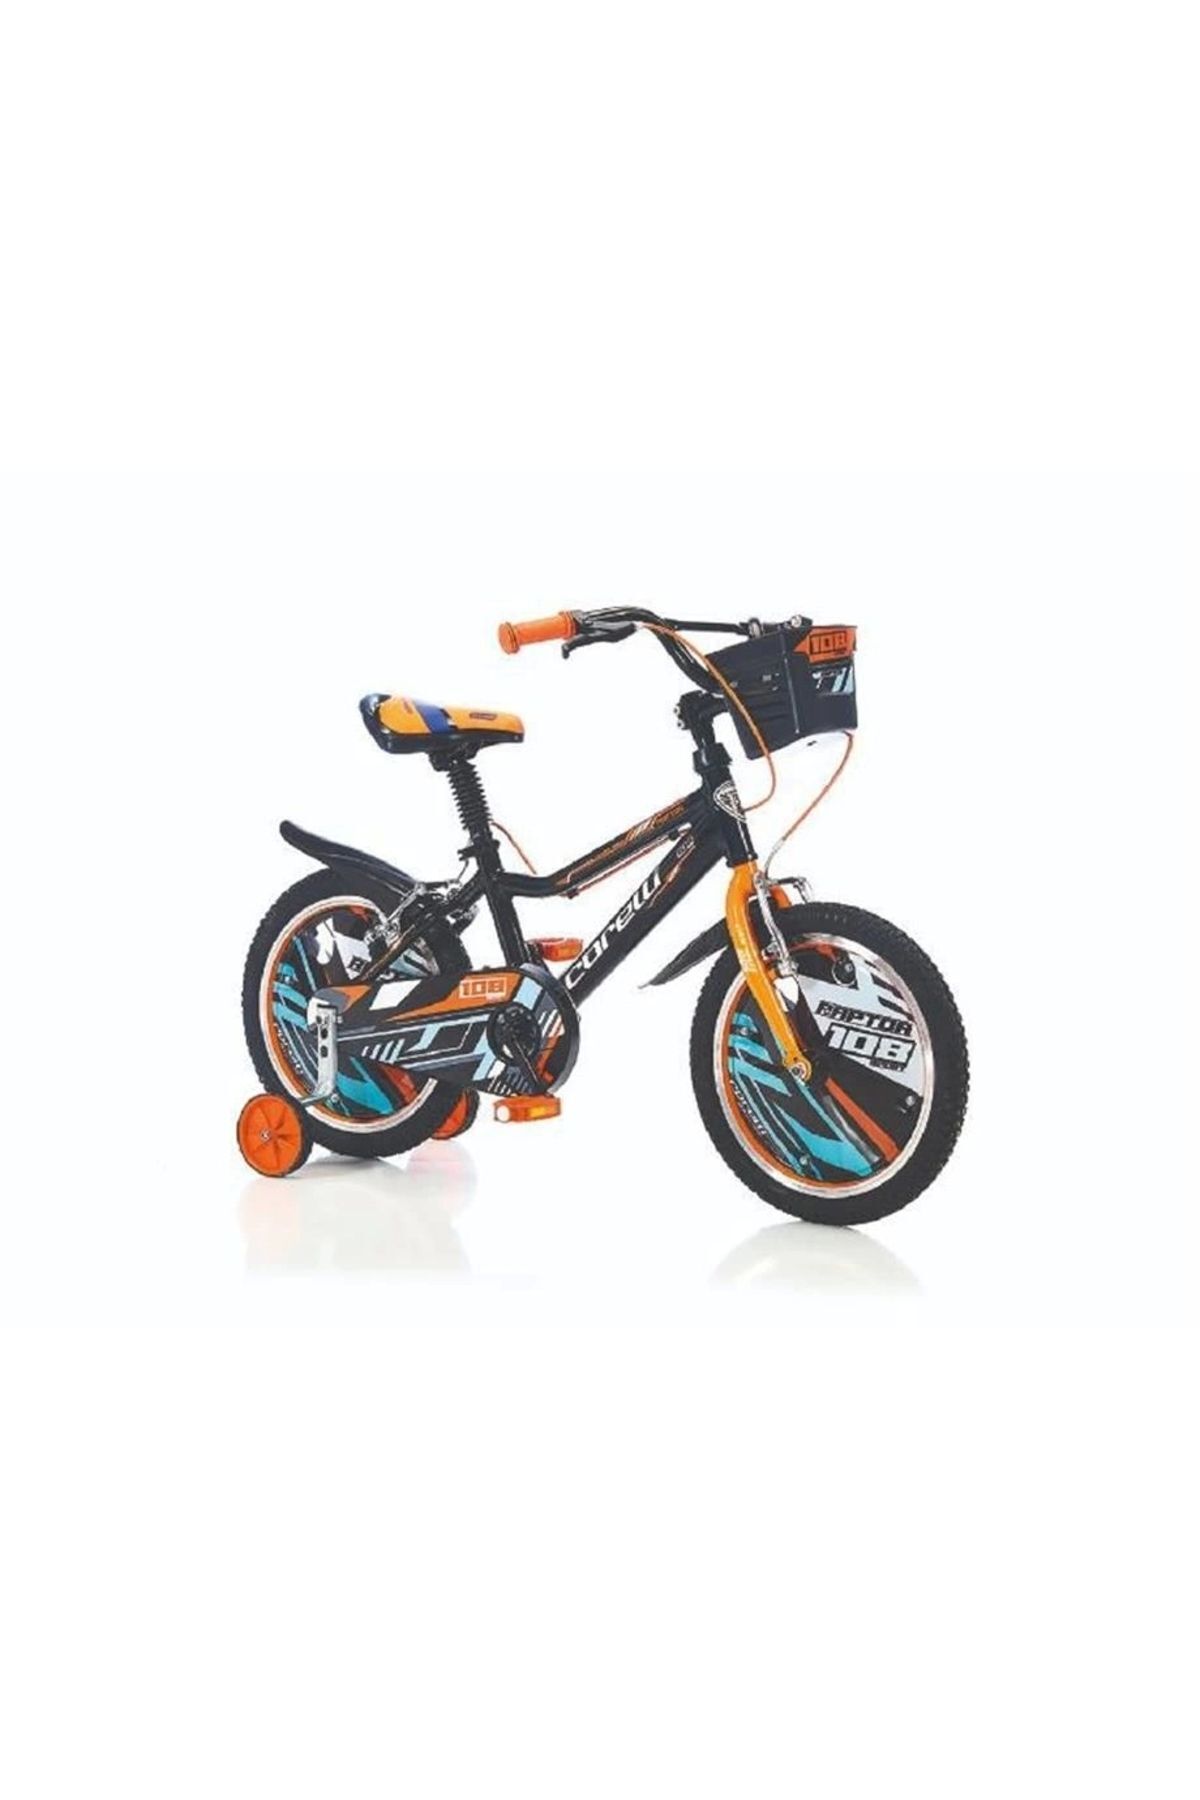 Corelli Raptor 16 Jant Çocuk Bisikleti Alüminyum Kadro Kırmızı Siyah